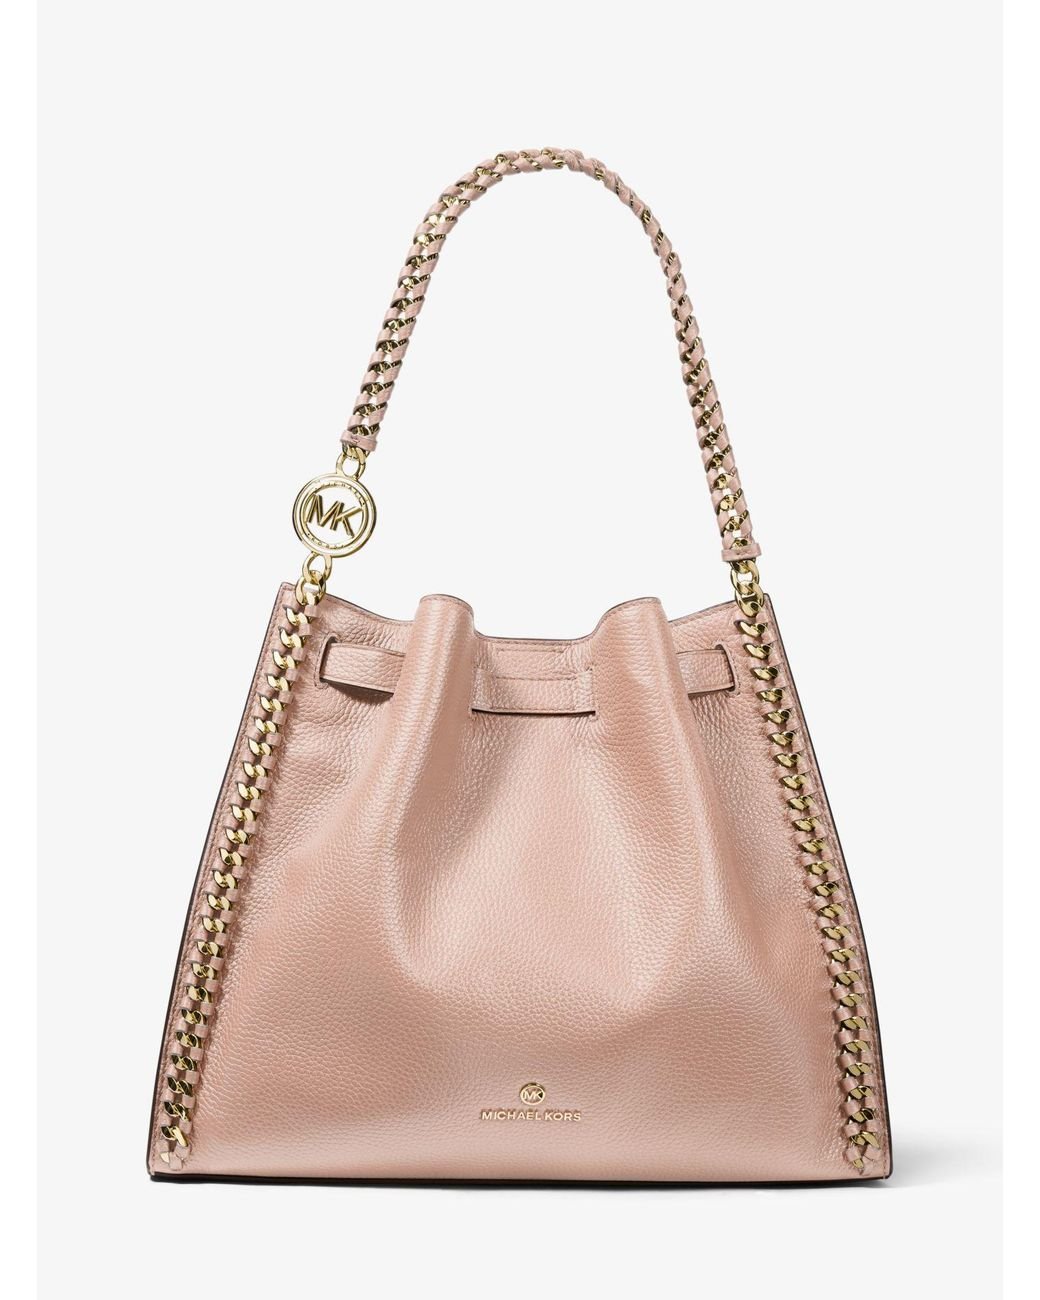 Michael Kors Mina Large Pebbled Leather Shoulder Bag in Soft Pink (Pink ...